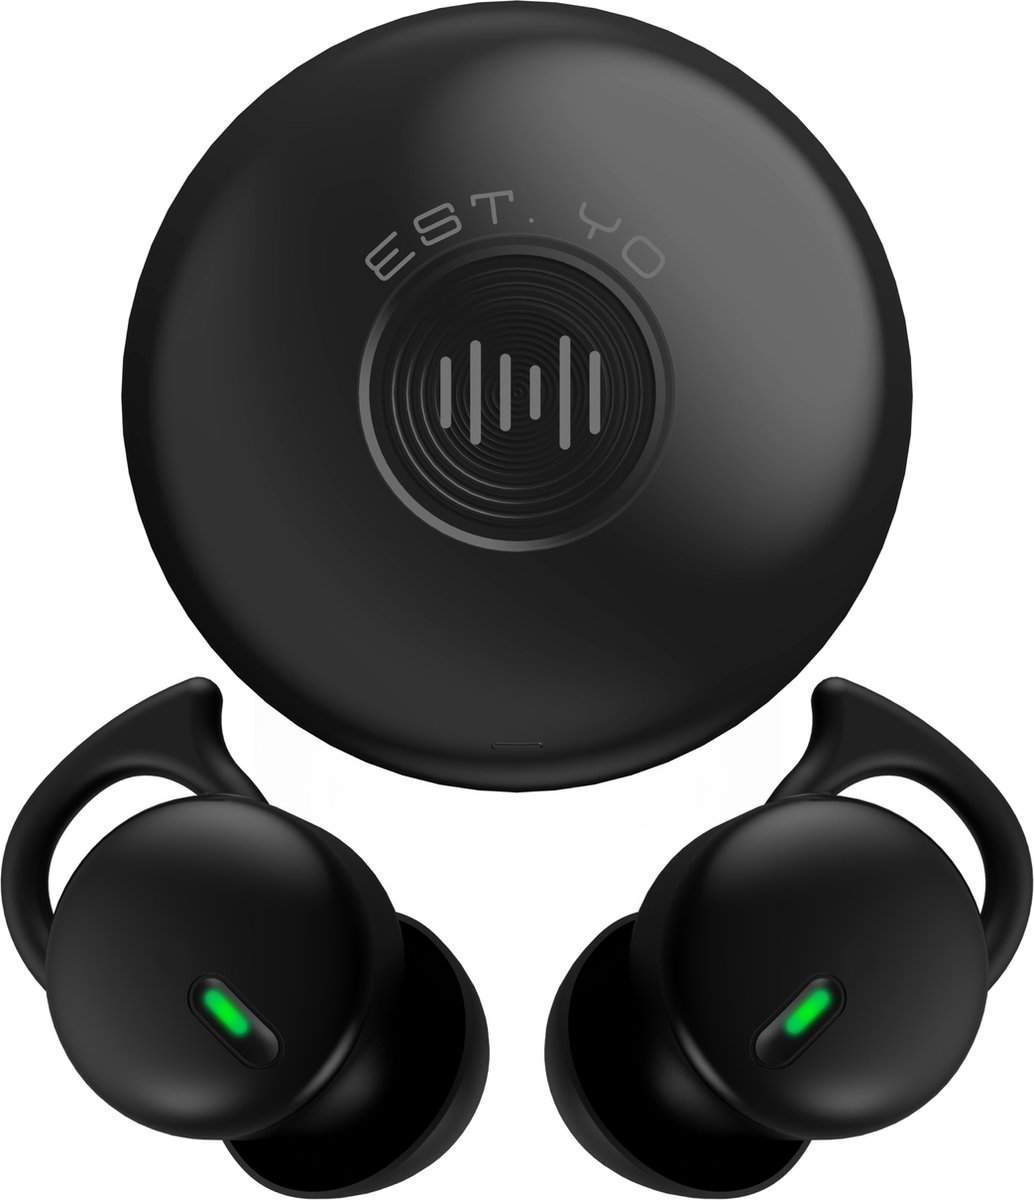 EstYo - Draadloze Oordopjes - Bluetooth Oordopjes - Oordopjes Slapen - Supercomfort- HD audio - Touch Bediening - Zwart - Voor iPhone en Android - USB-C - Sport earbuds - Slaap oordopjes - Batterij indicator - Draadloze Oortjes -Bluetooth 5.3